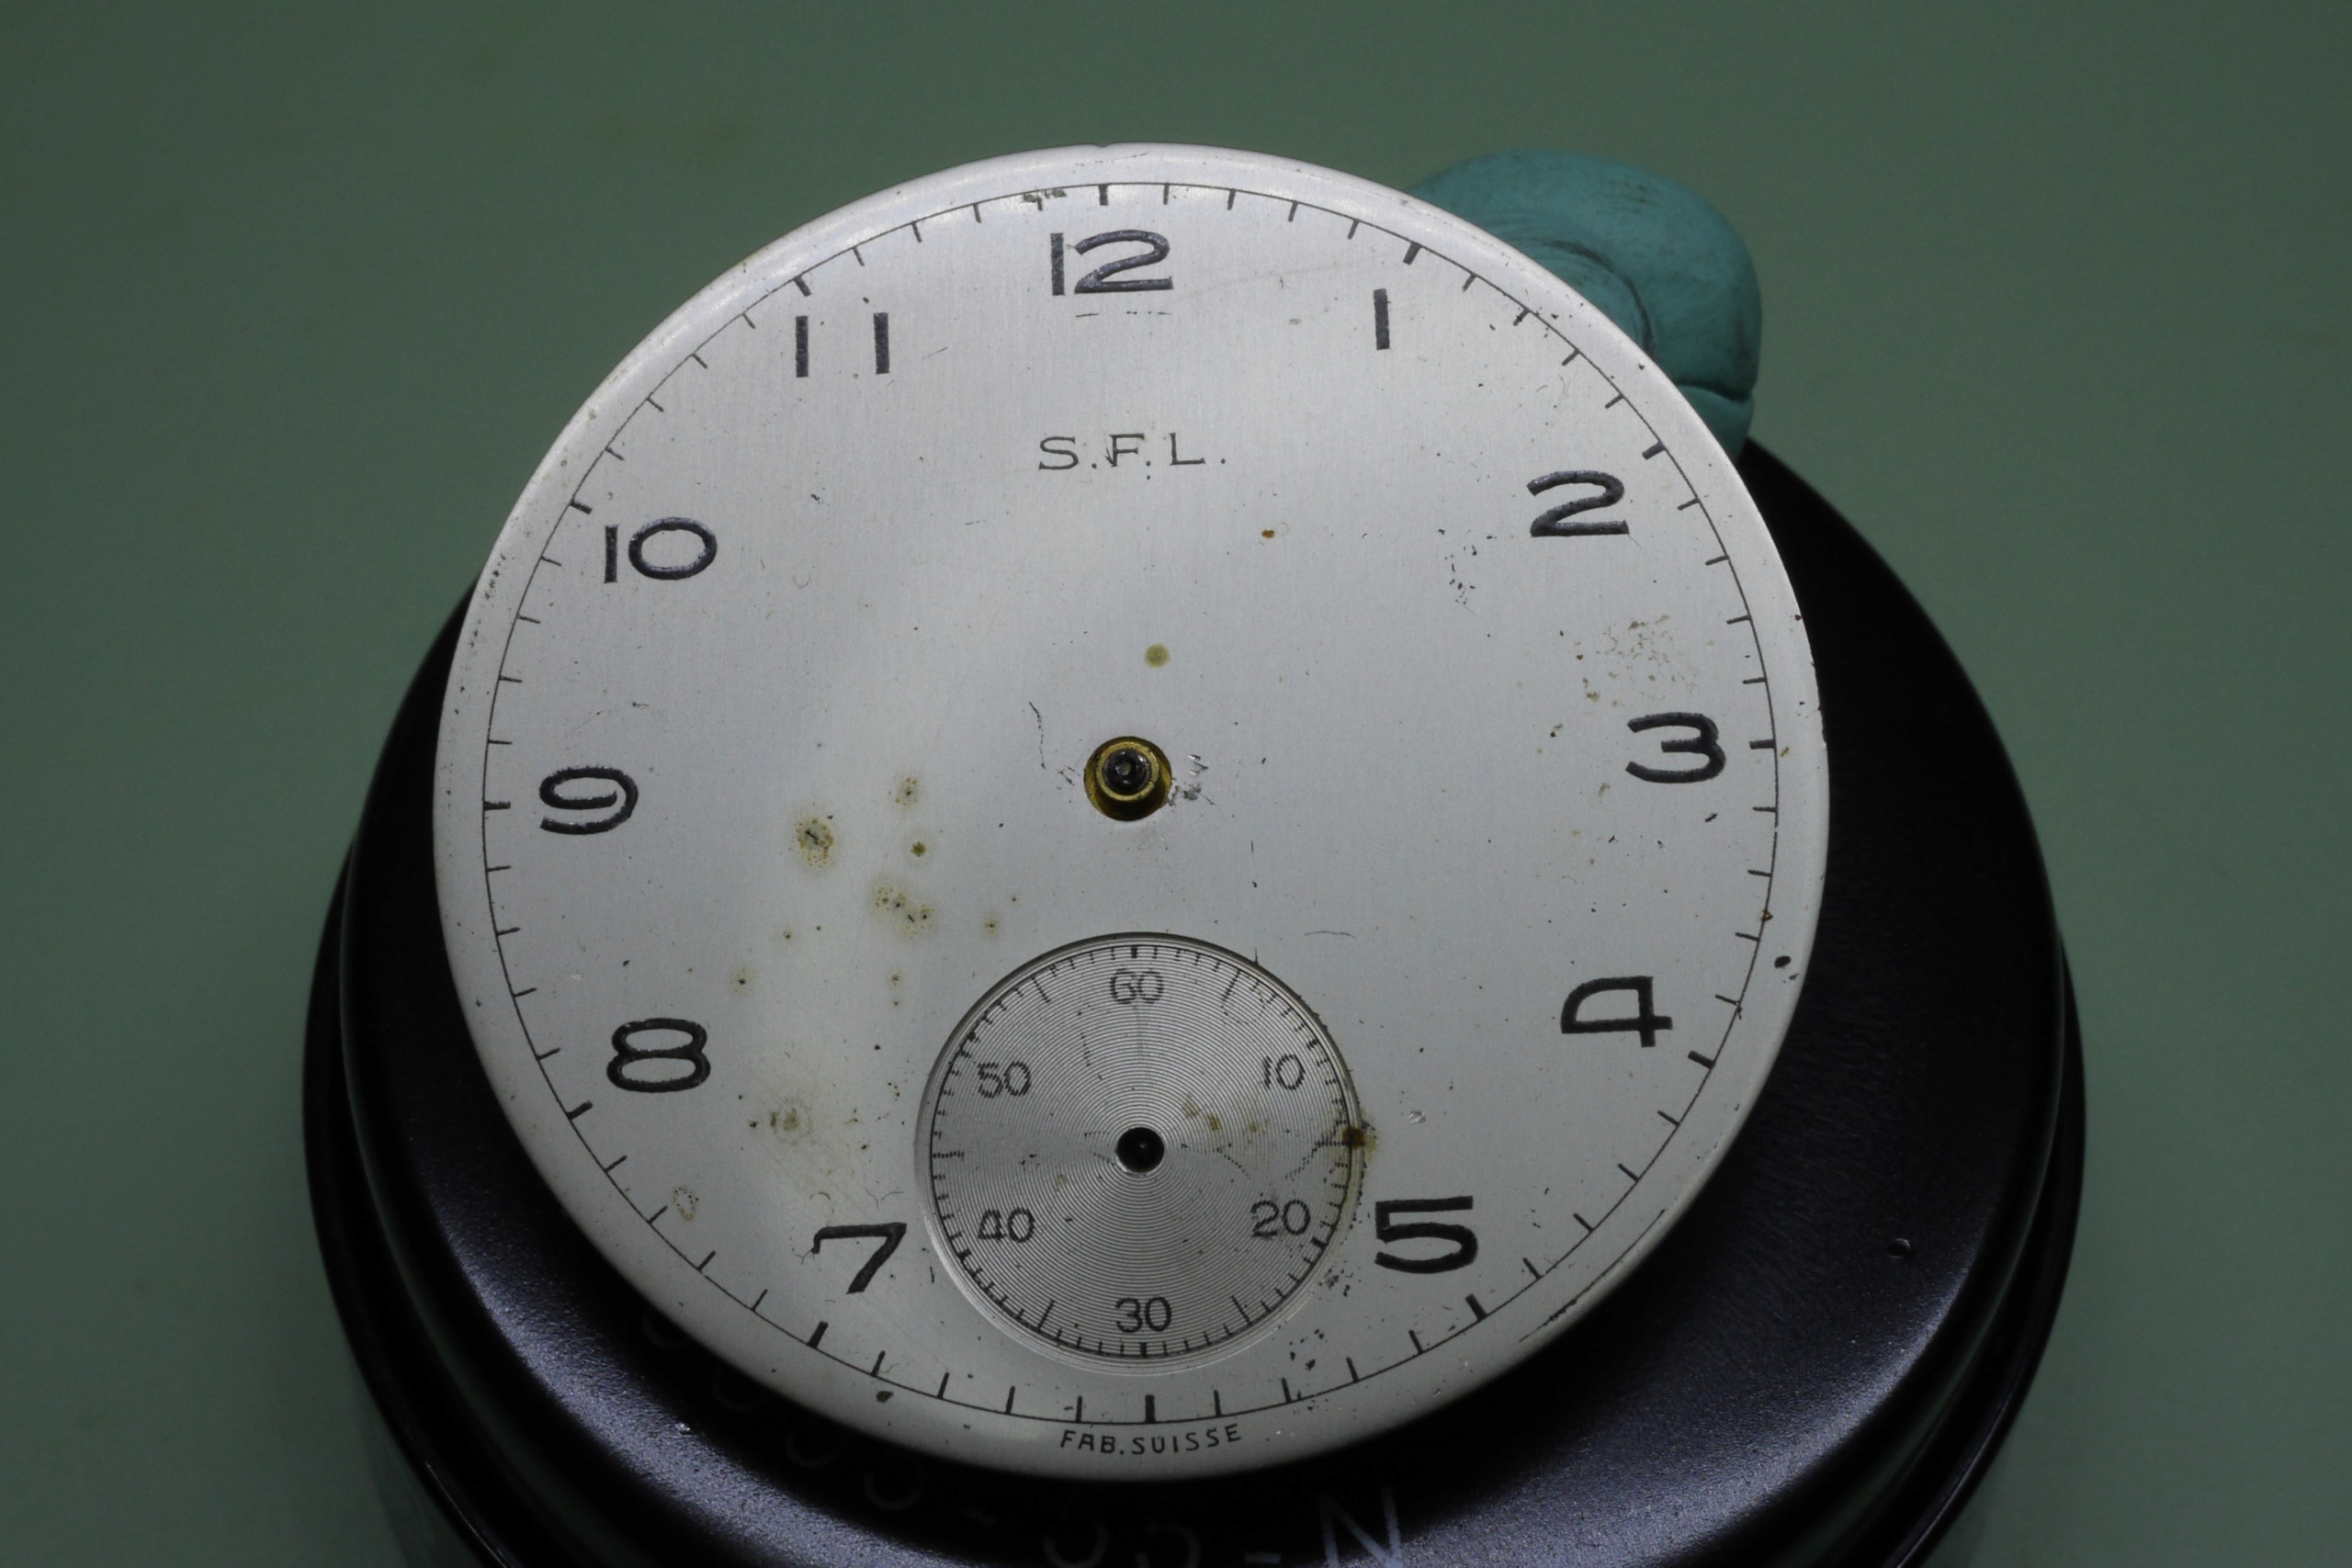 Réparation et entretien d'une montre de poche S.F.L (société française longines) 3010